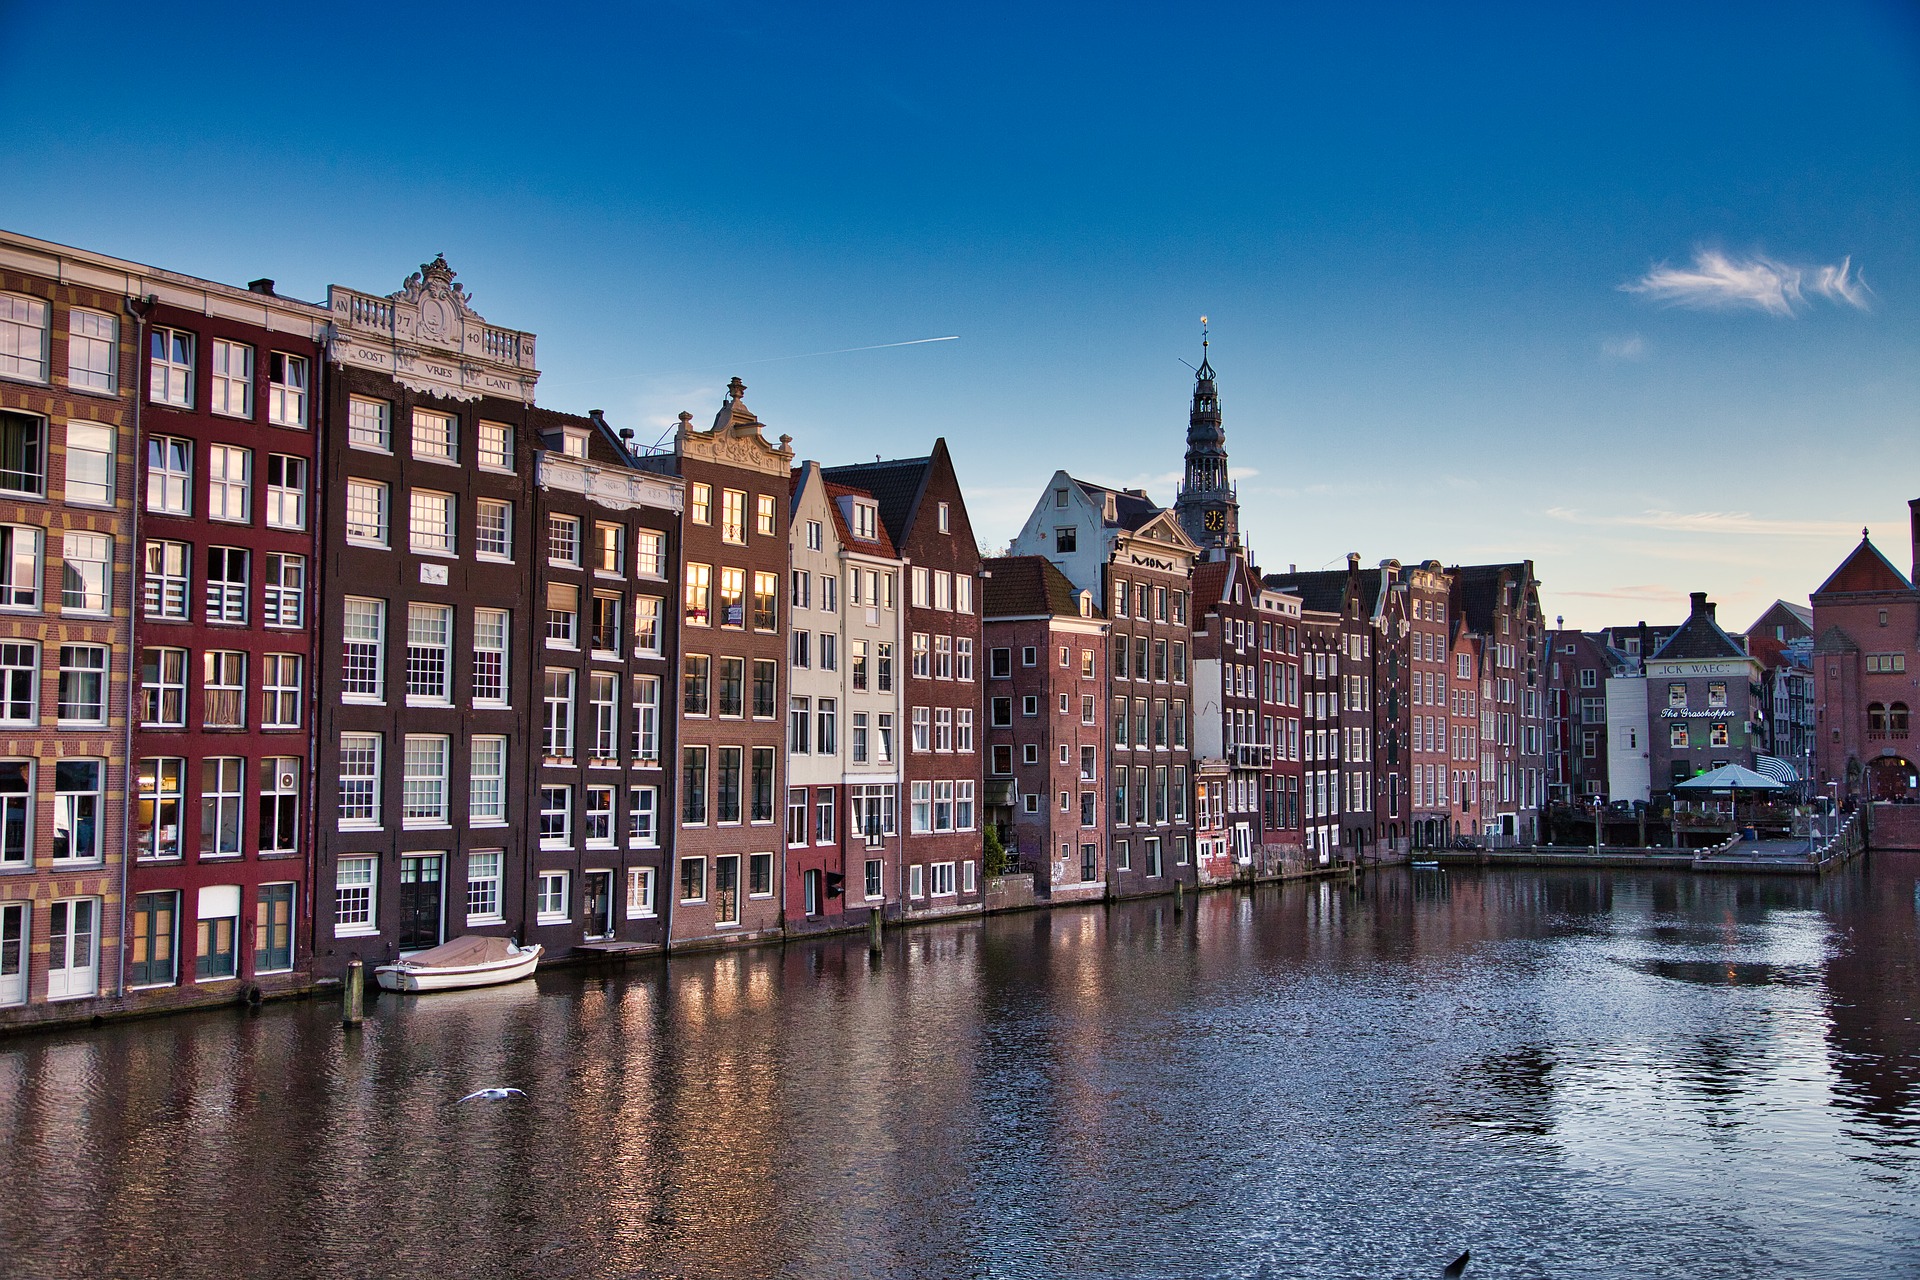 年 6月 アムステルダム中心部 ジンフェルグラハト内部の17世紀の環状運河地区 世界遺産検定